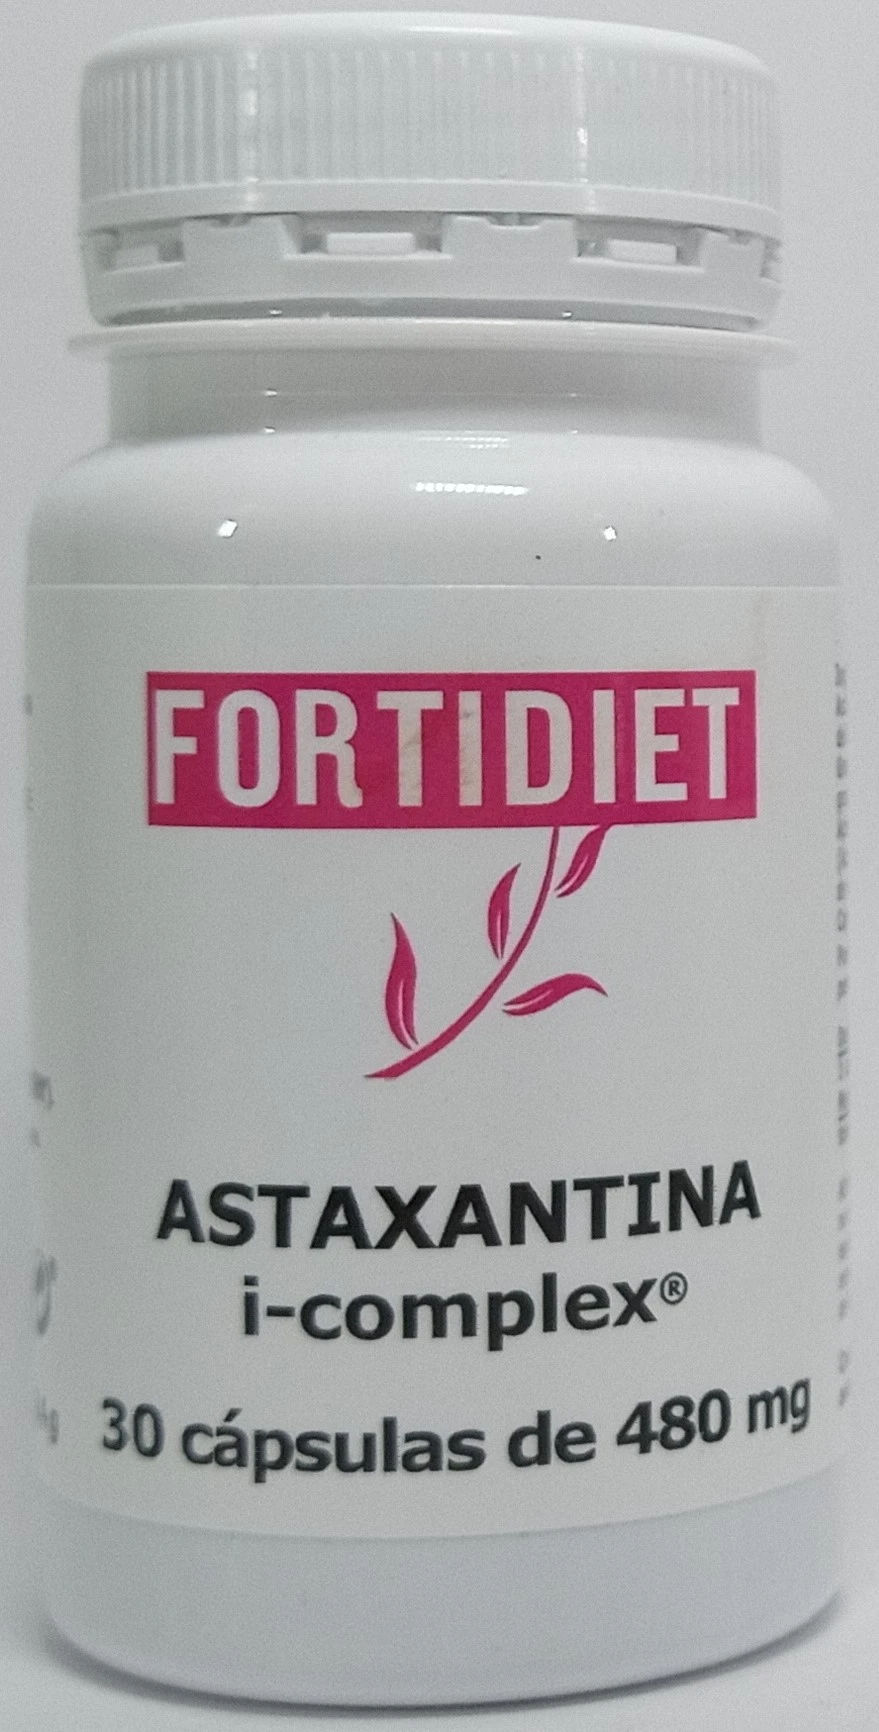 Fortidiet Astaxantina i-complex 30 caps.